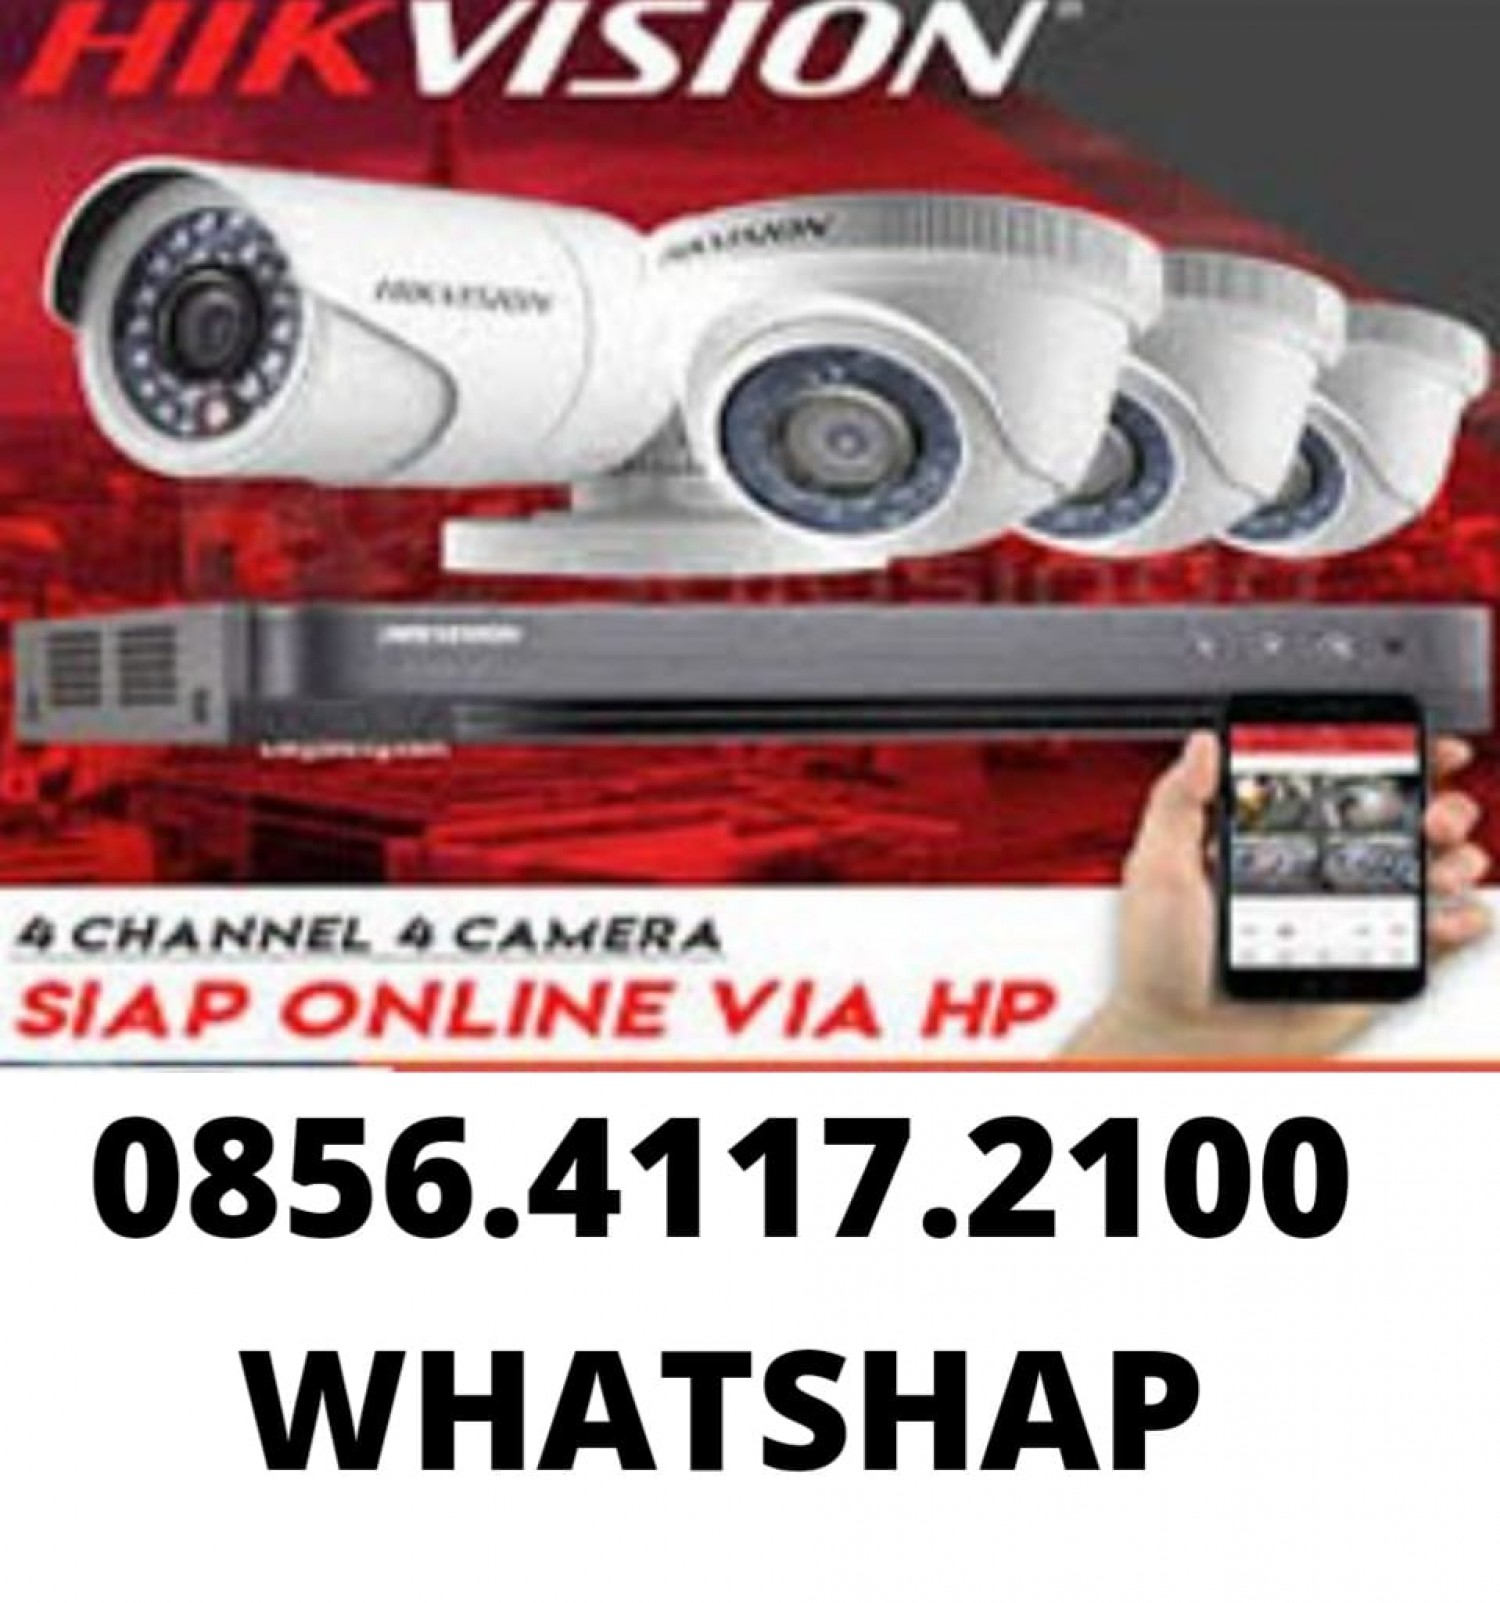 PASANG CCTV BATANG 085641172100